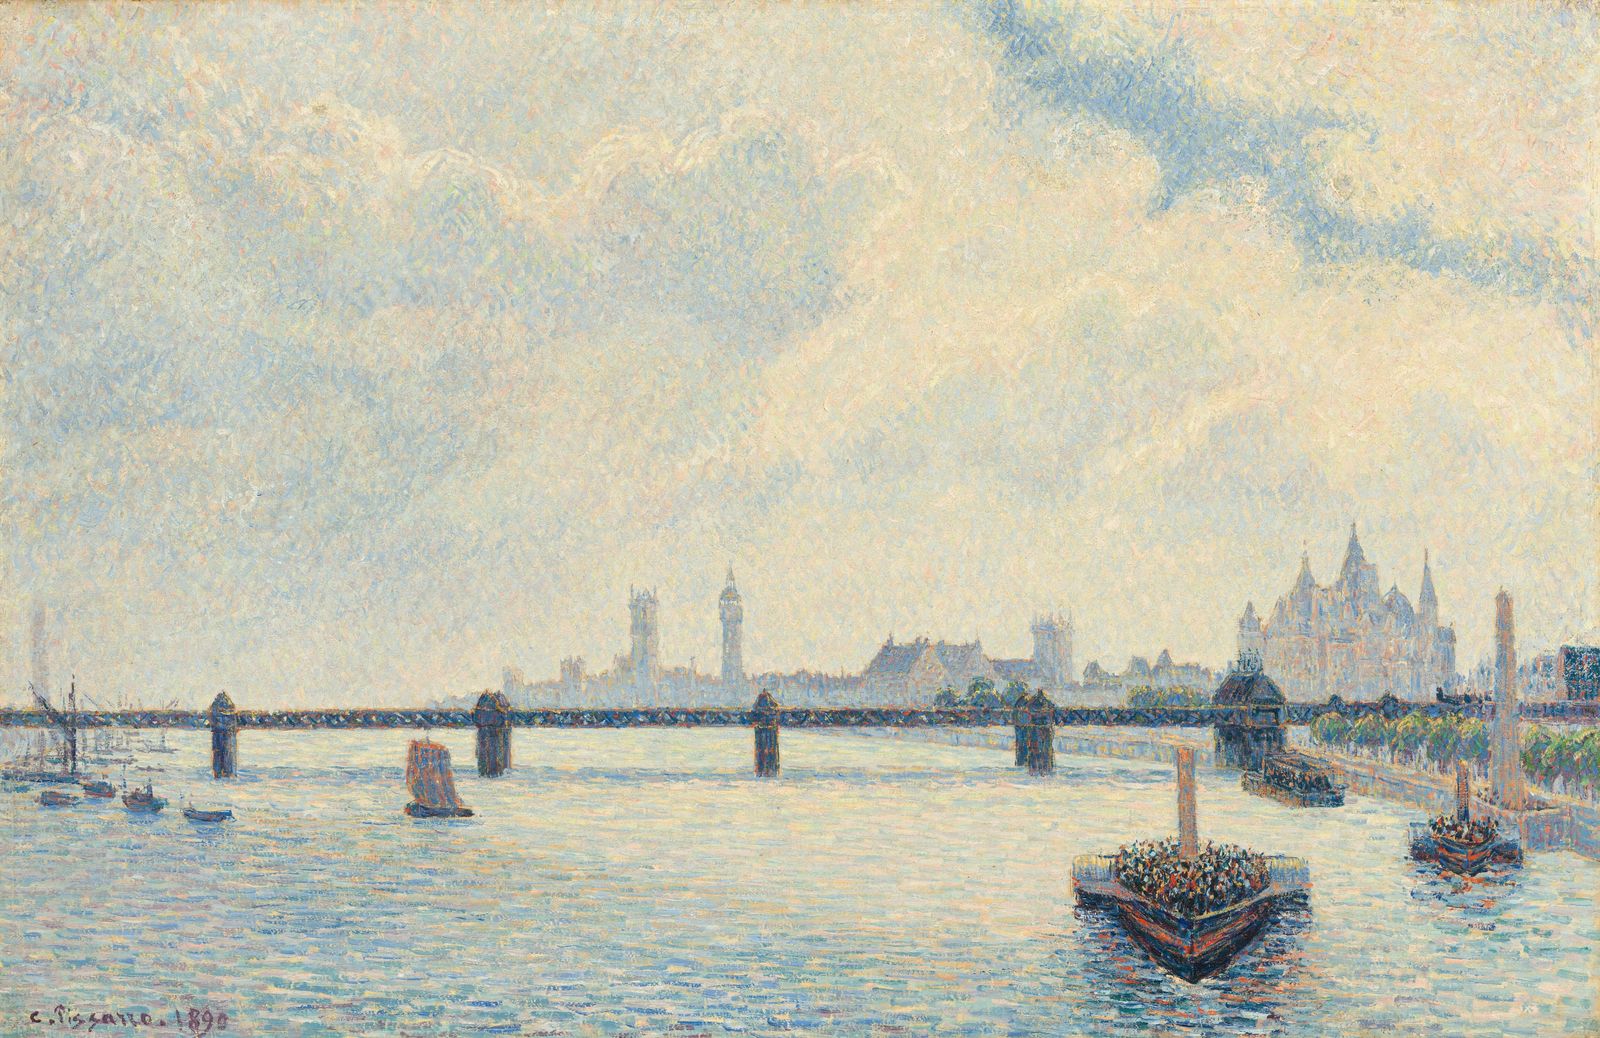 Камиль Писсарро. Мост Чаринг-Кросс, Лондон. 1890